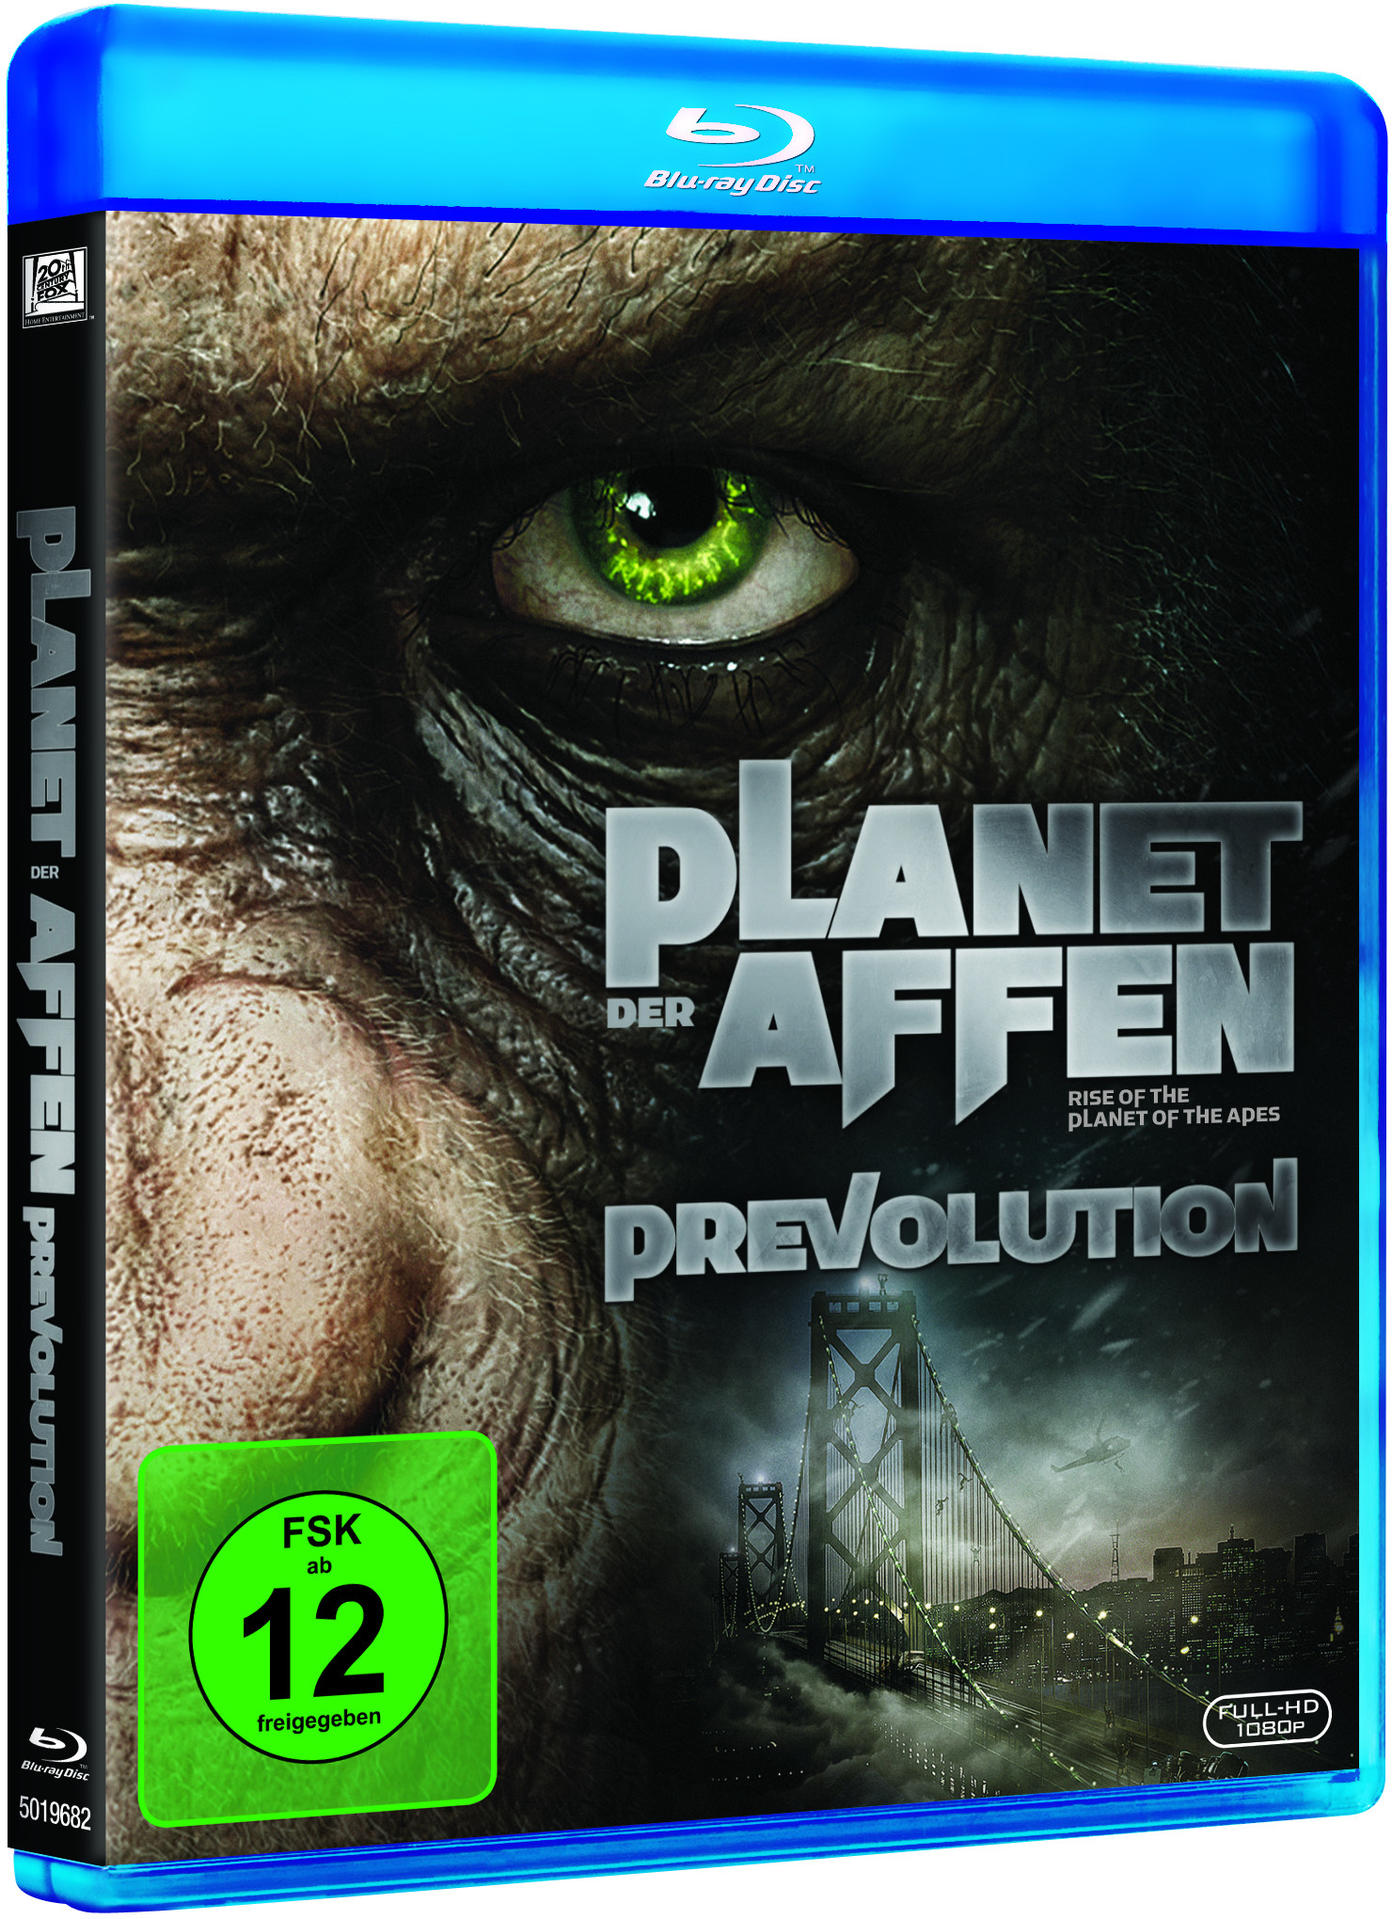 Planet der Affen - Prevolution Blu-ray